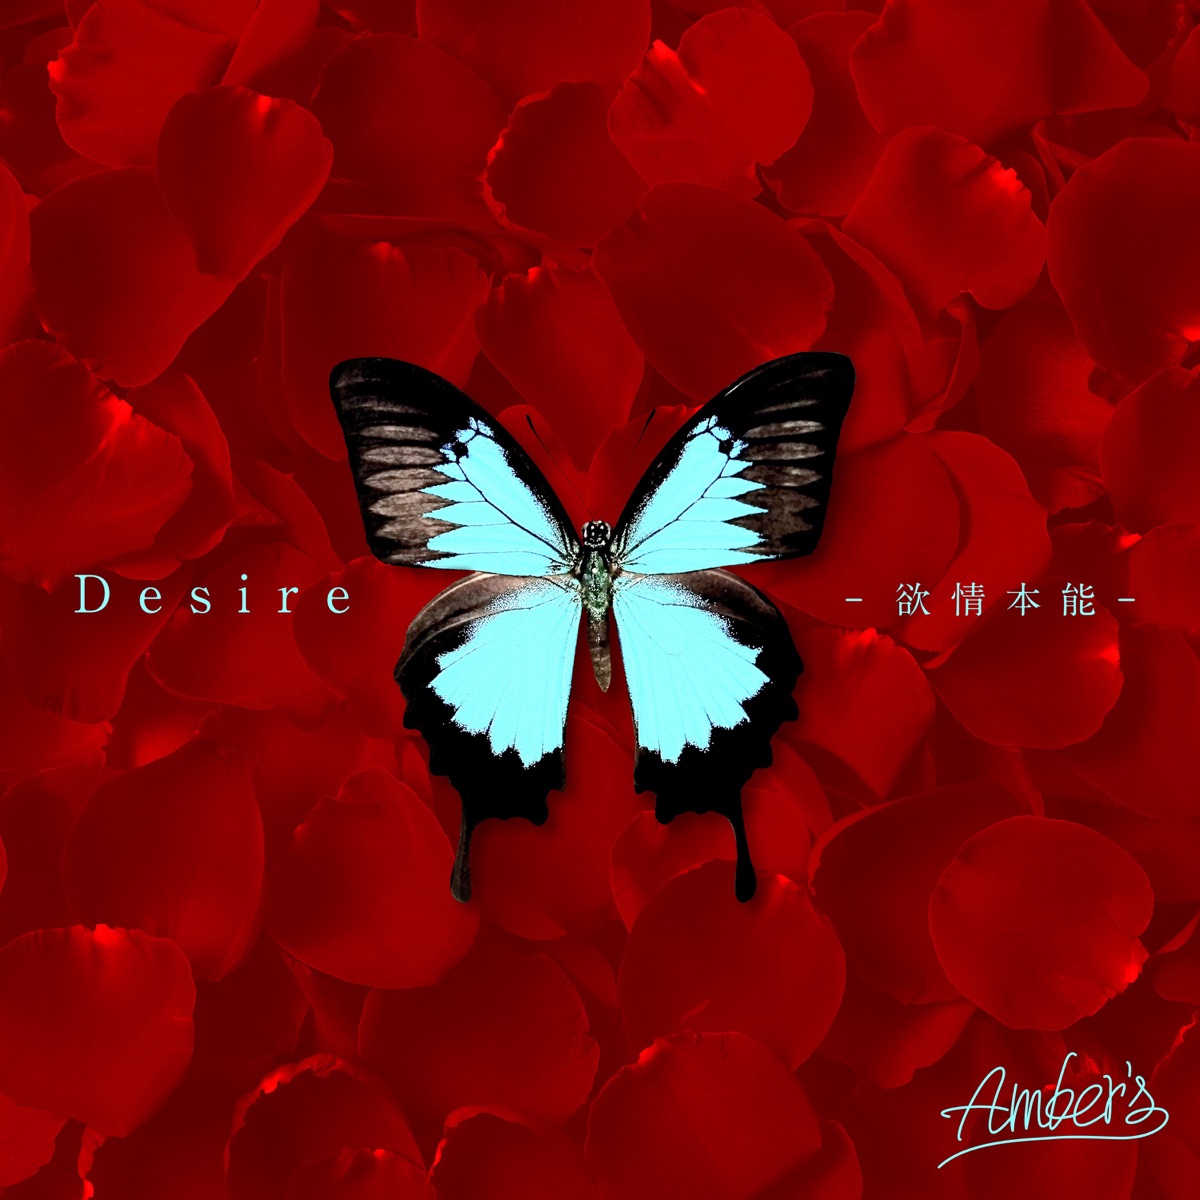 Cover art for『Amber's - Desire -Yokujou Honnou-』from the release『Desire -Yokujou Honnou-』